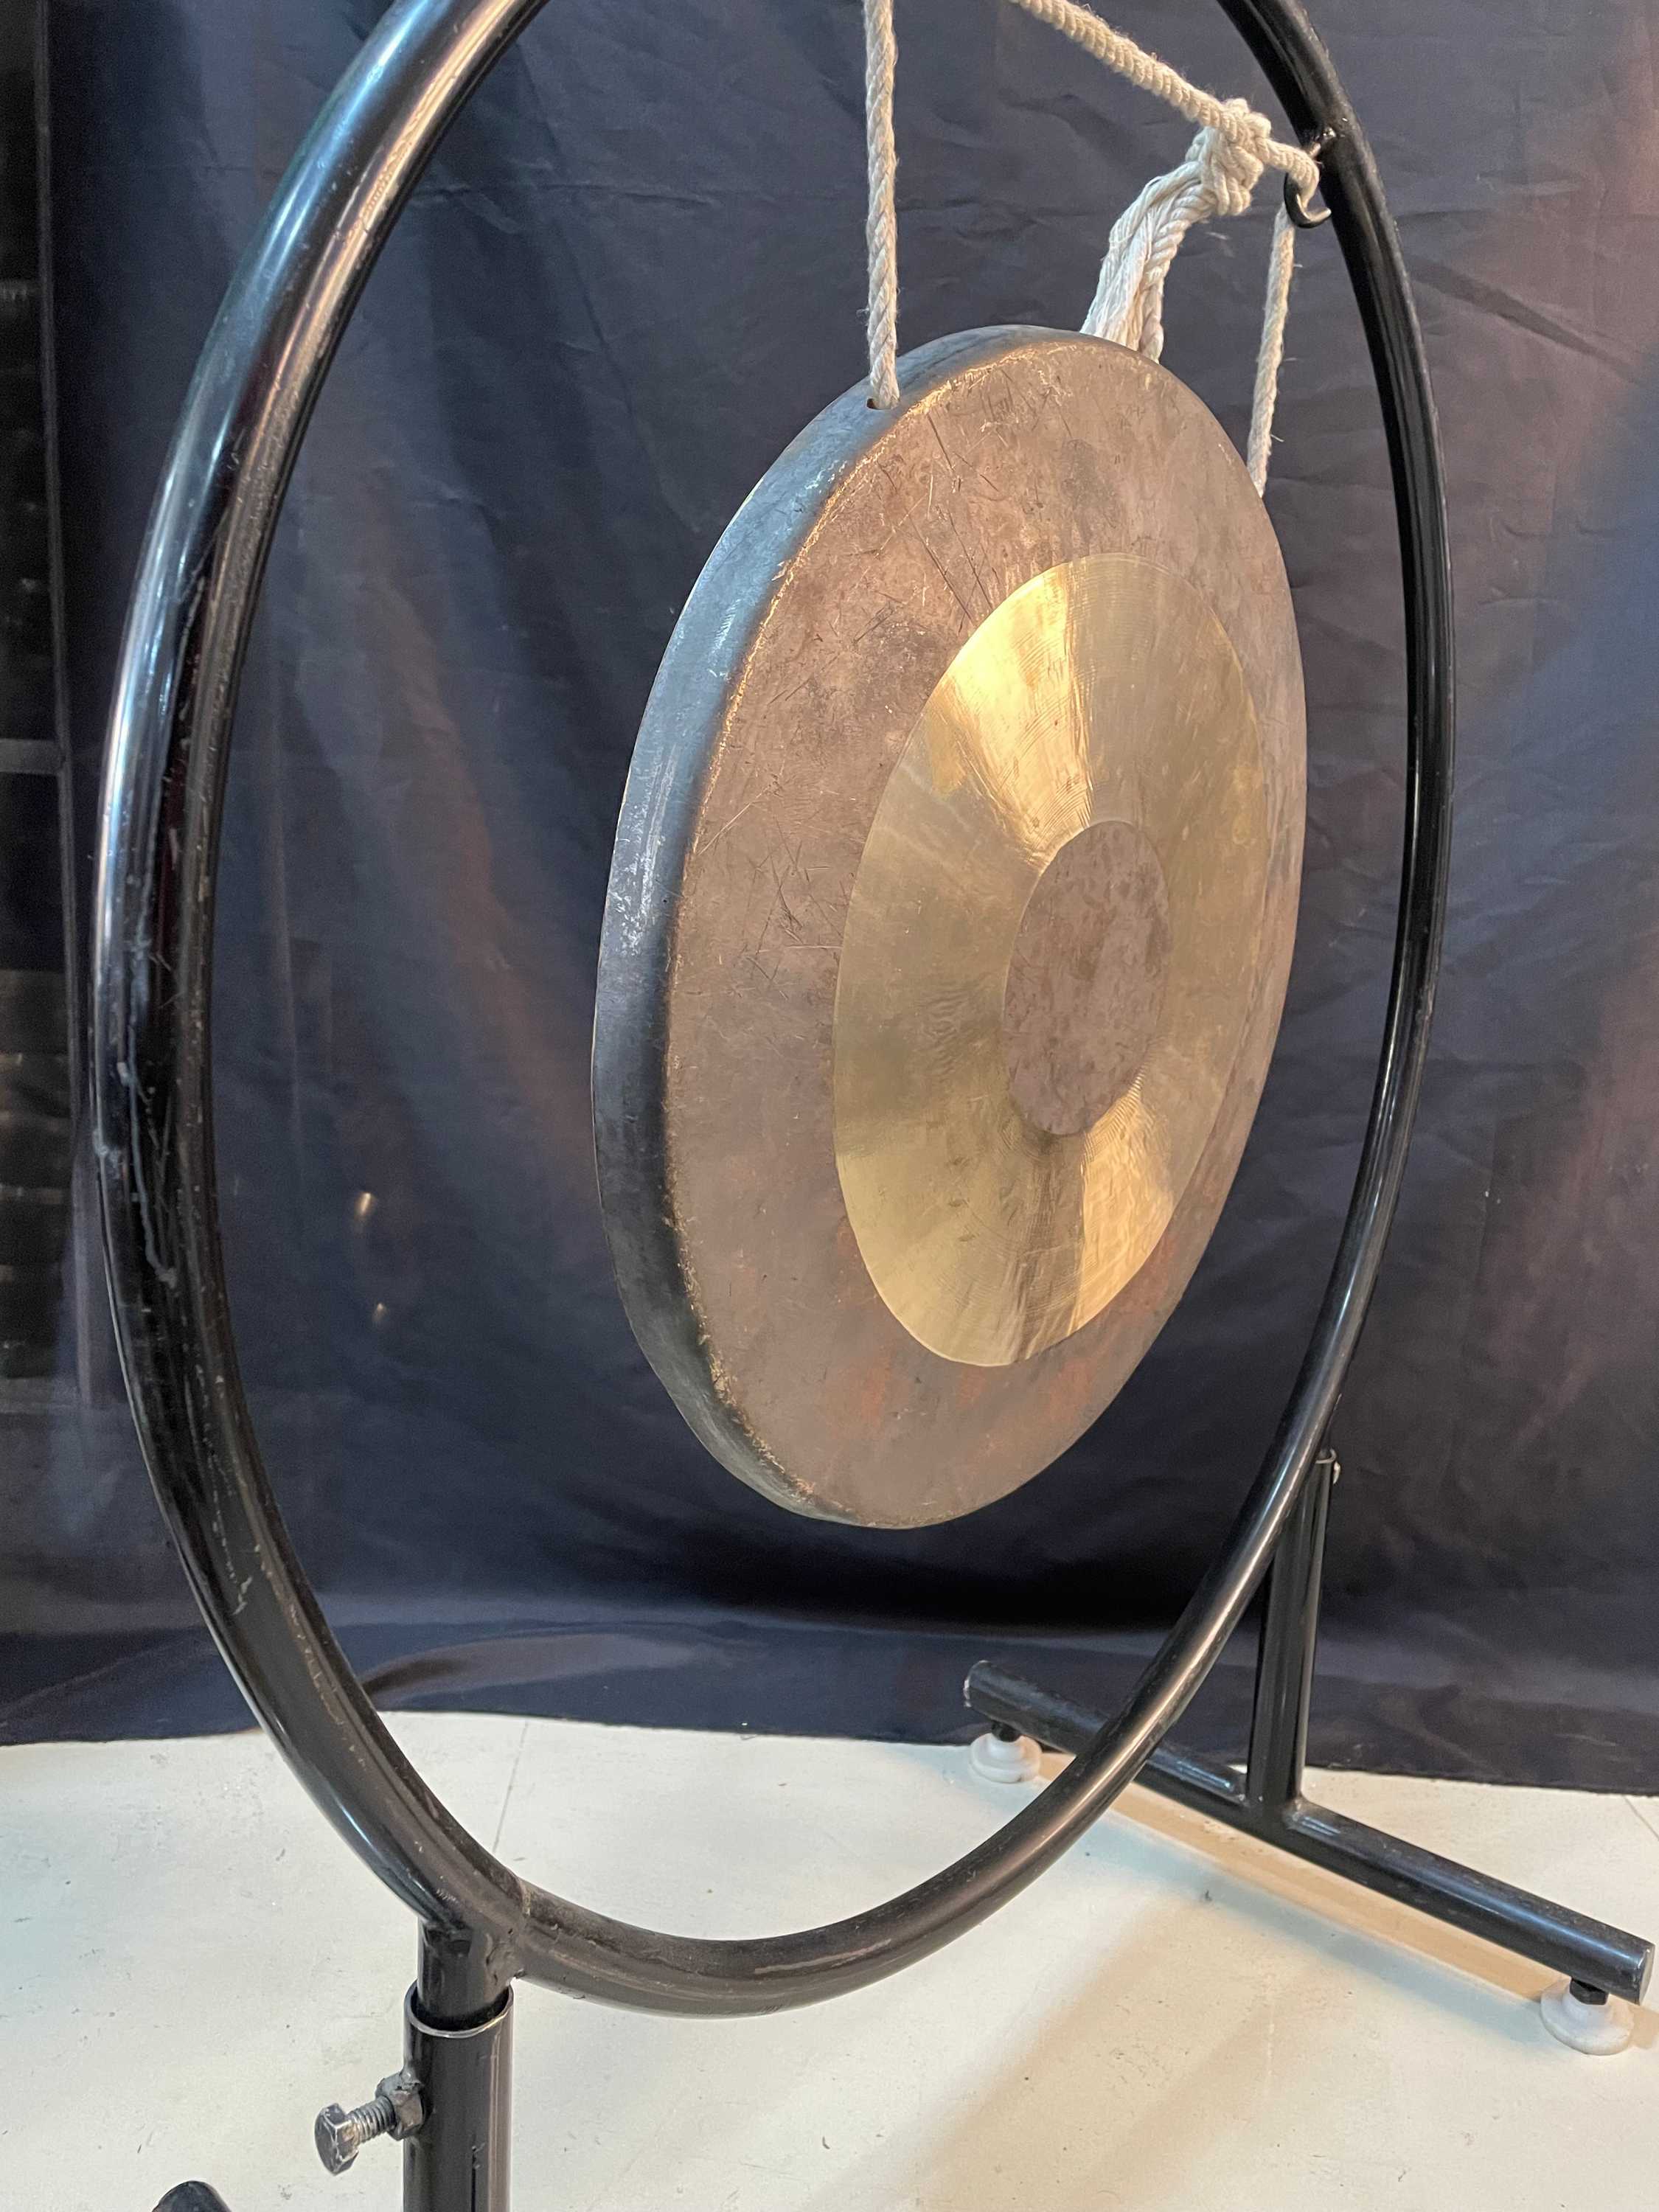 Bronze Gong, Burmese Gong, Gong Size 40 Cm, Gong Weight 3.5kg